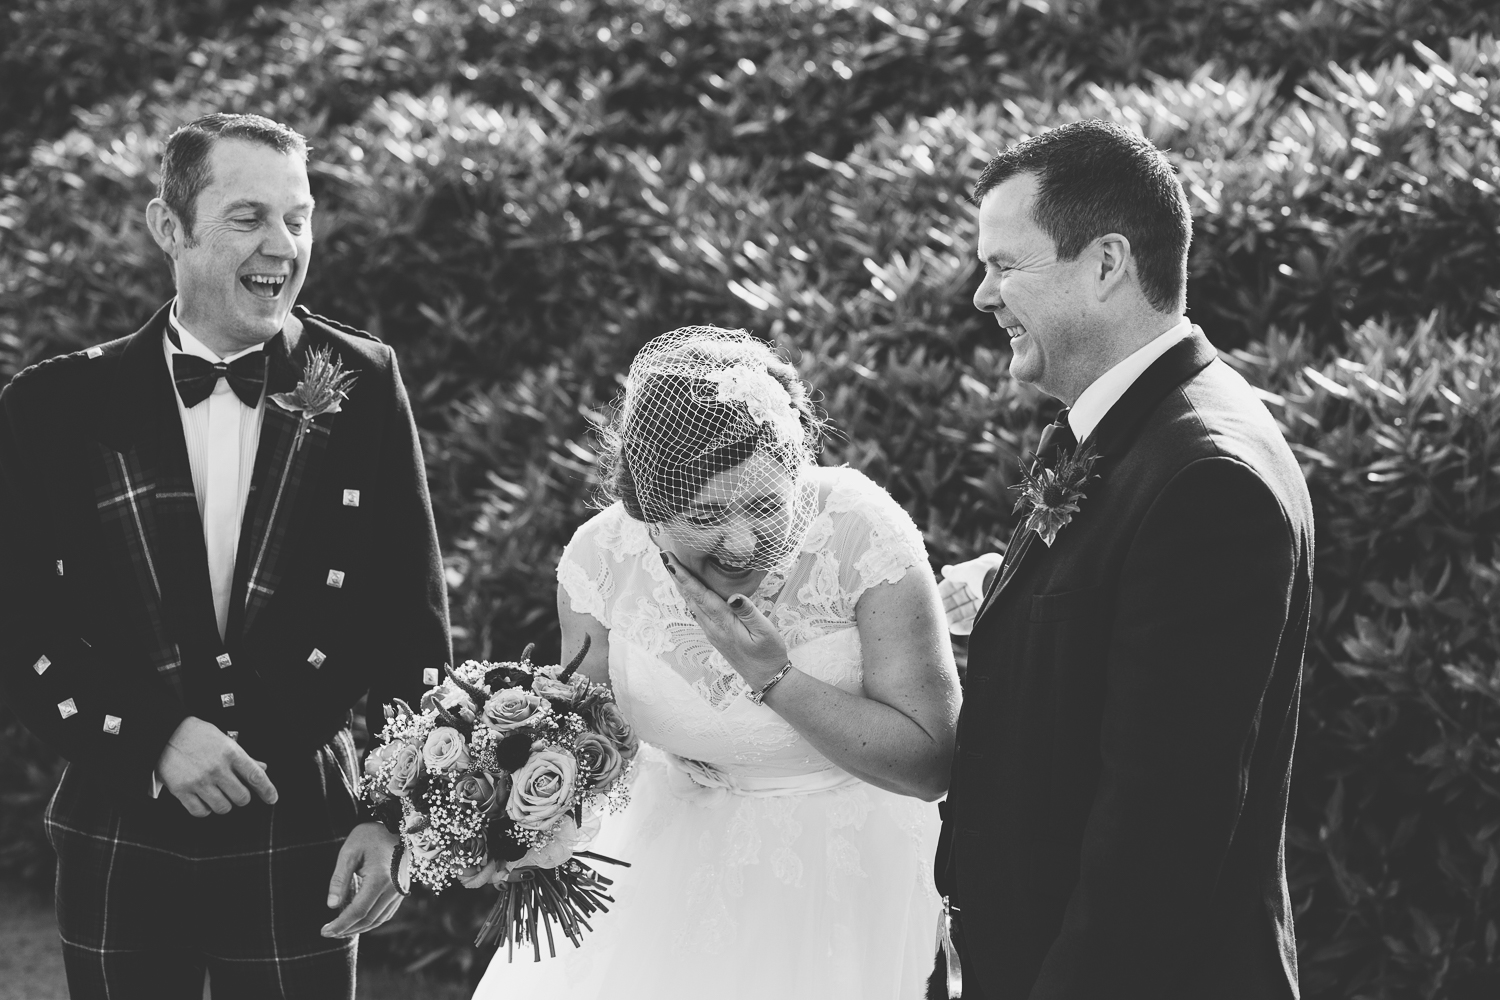 Aberdeen wedding photographer, Aberdeen wedding photography, wedding photography Aberdeen, wedding photographers in Aberdeenshire, wedding photographers Scotland